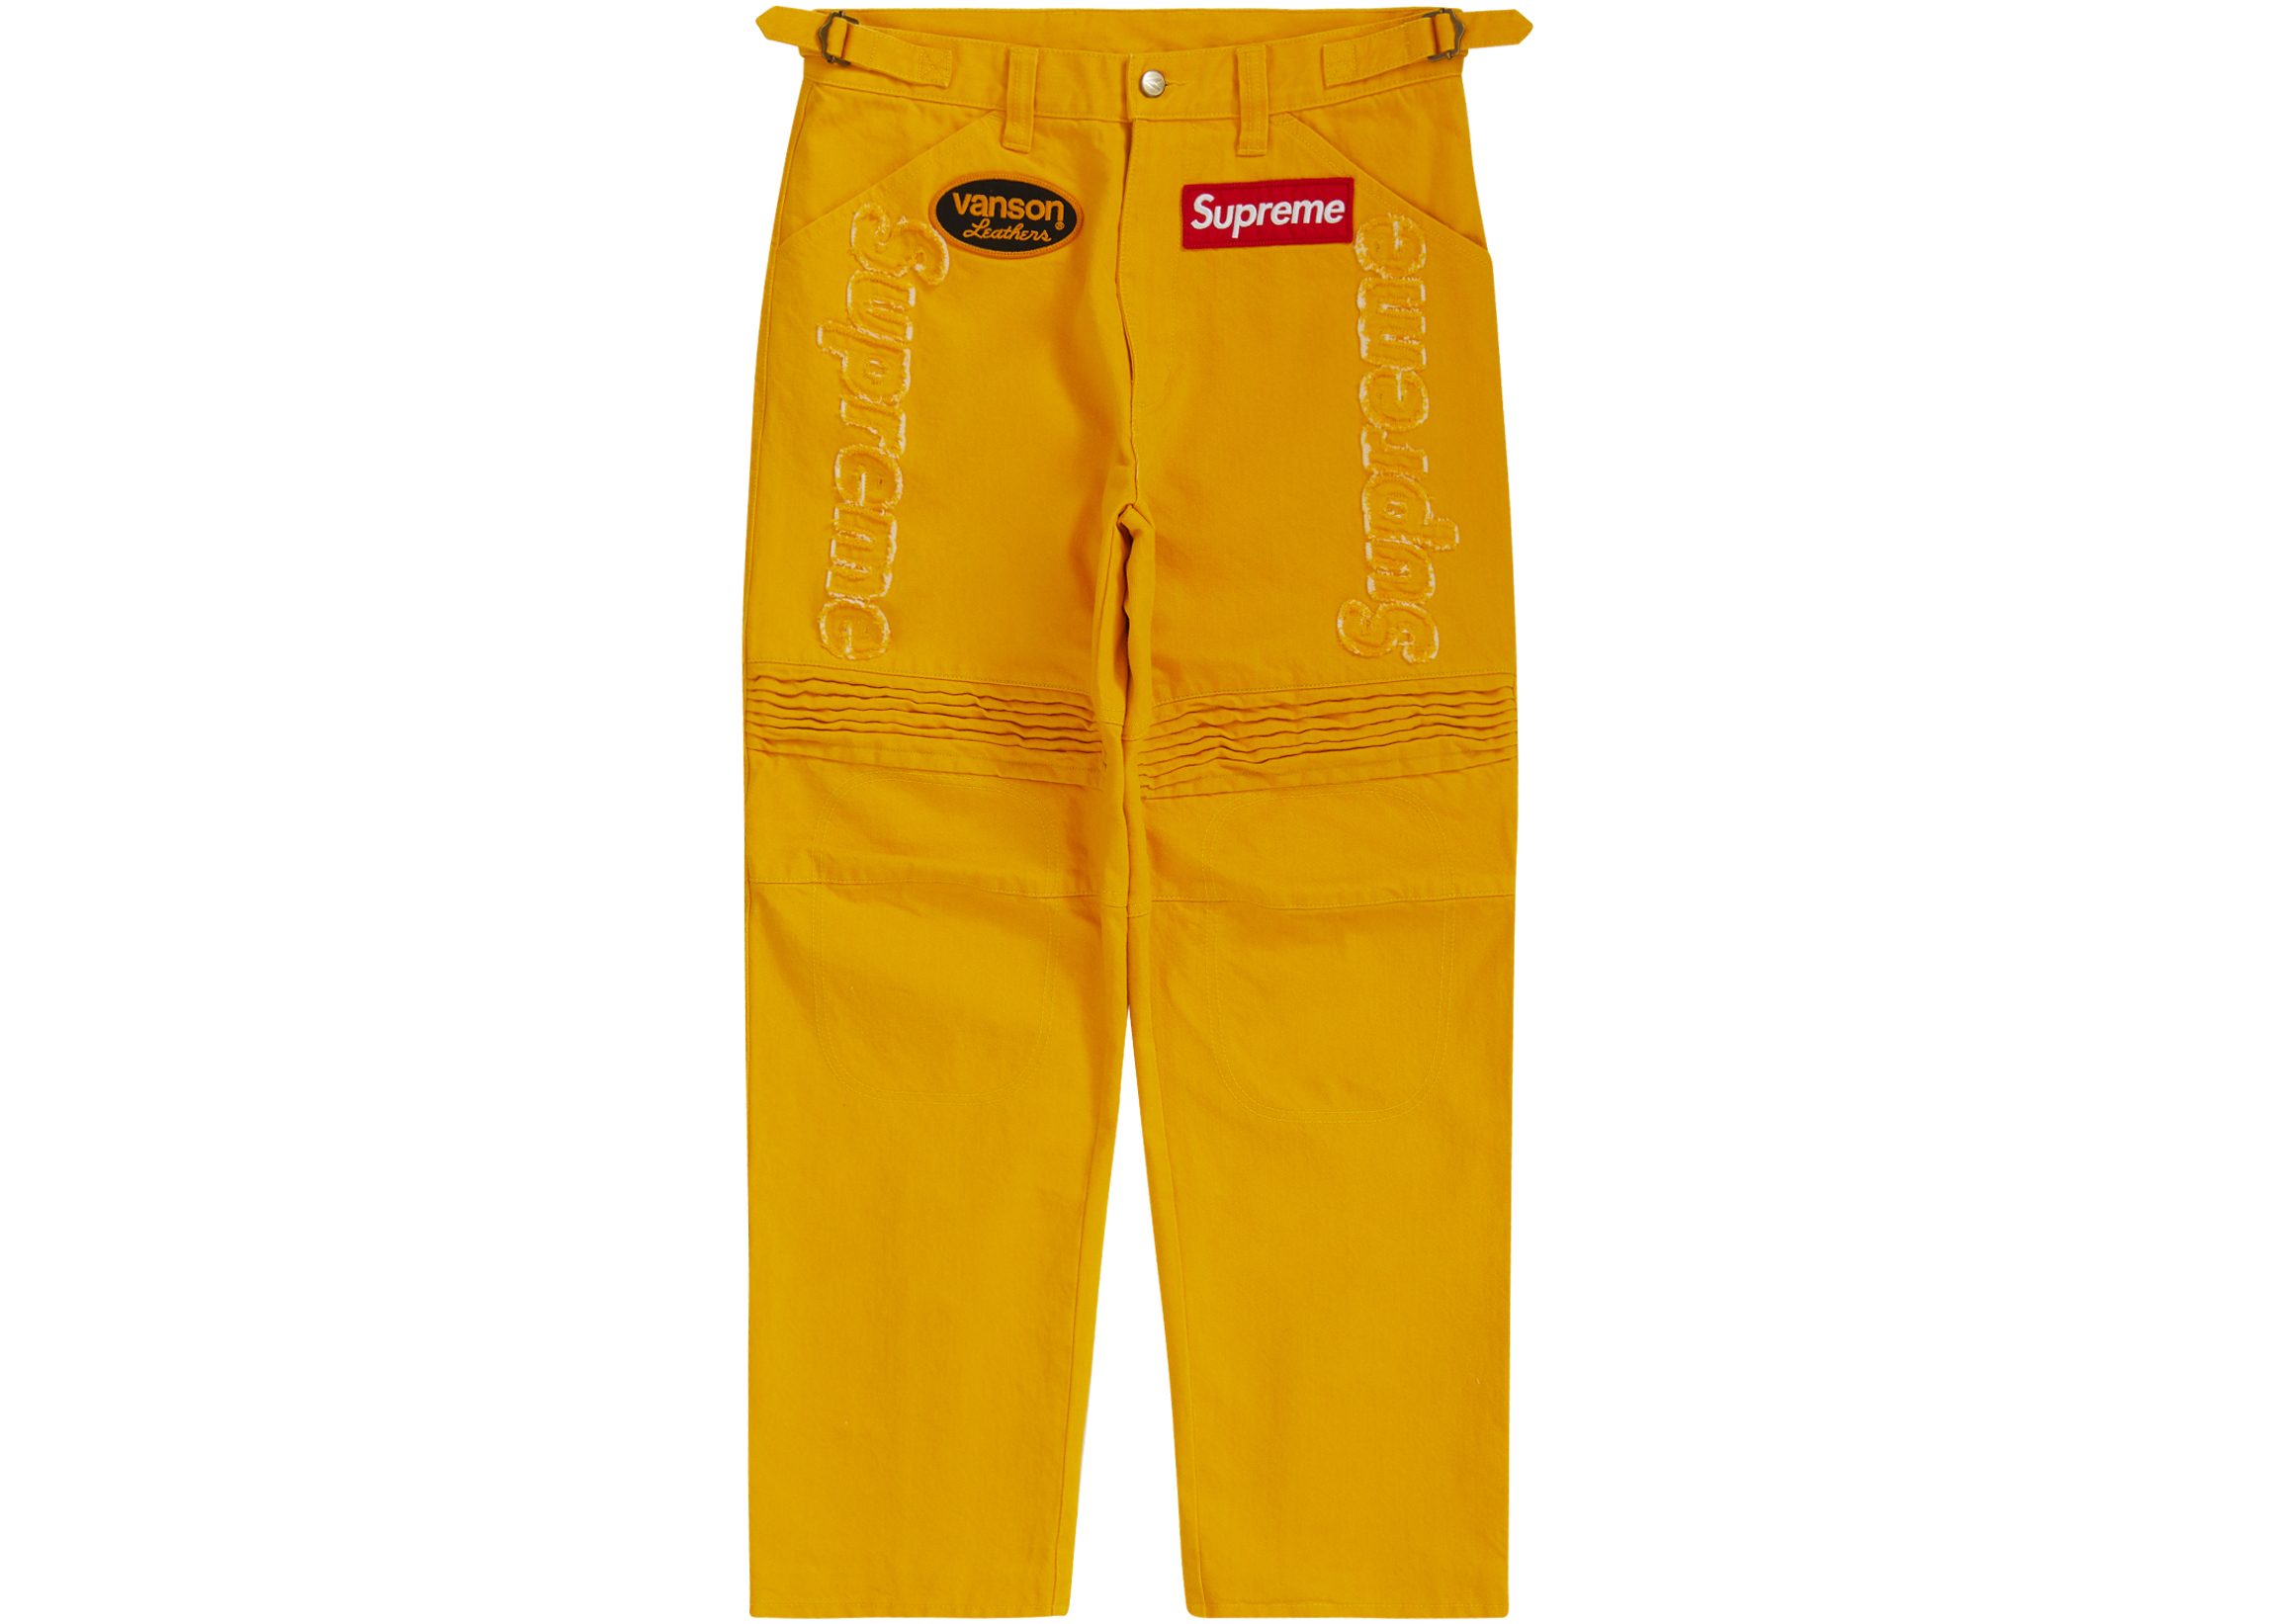 Supreme Vanson Leathers Cordura Denim Racing Pant Yellow Men's 